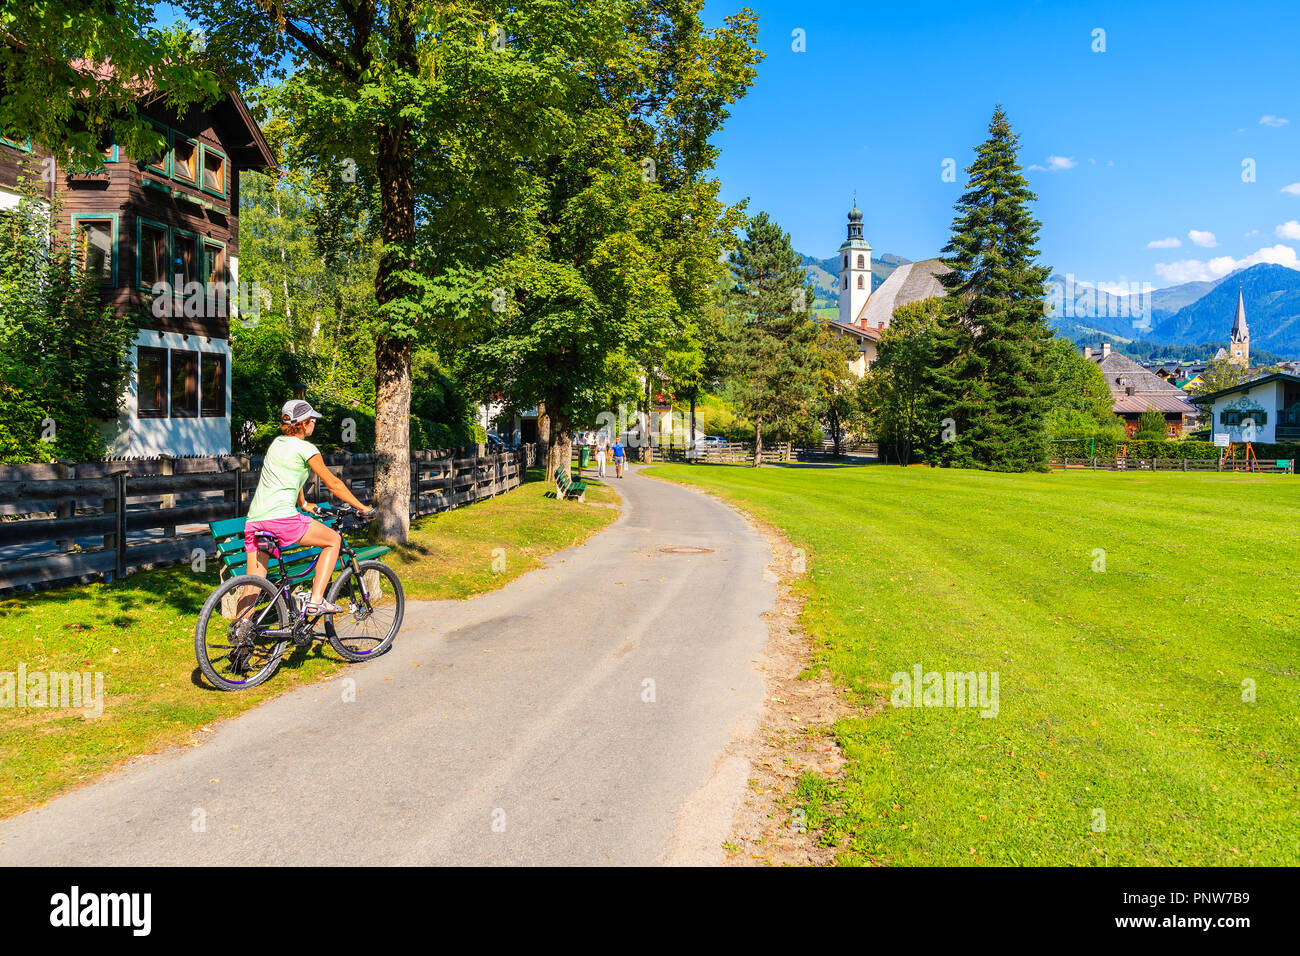 Dalla città di Kitzbuhel, Austria - 30 LUG 2018: Donna in bici sul percorso in Kitzbuhel parco cittadino contro sunny blue sky in estate. Si tratta di uno dei più famou Foto Stock